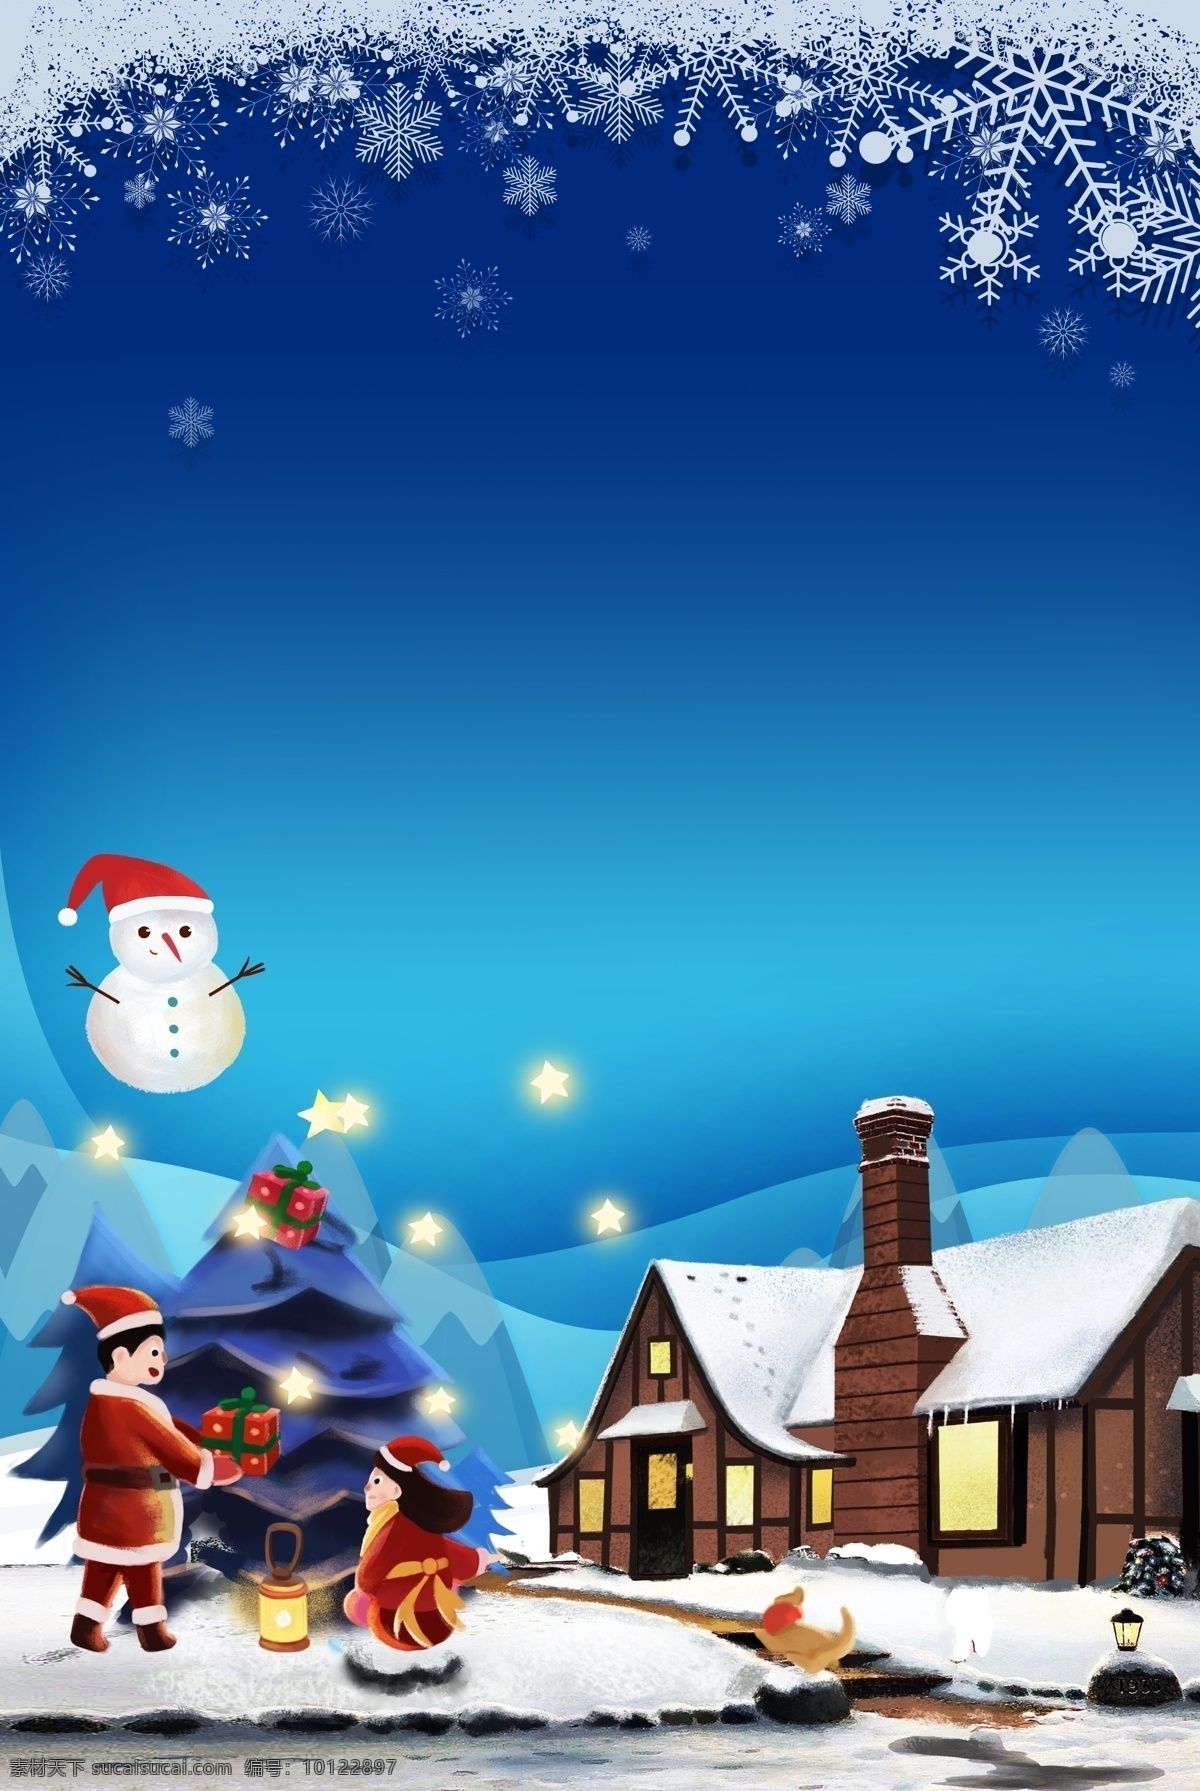 唯美 圣诞节 平安夜 海报 背景 雪花 梦幻 星星 蓝色 雪人 村庄 2018圣诞 圣诞背景设计 圣诞素材 圣诞装饰 圣诞快乐 圣诞老人 圣诞节展板